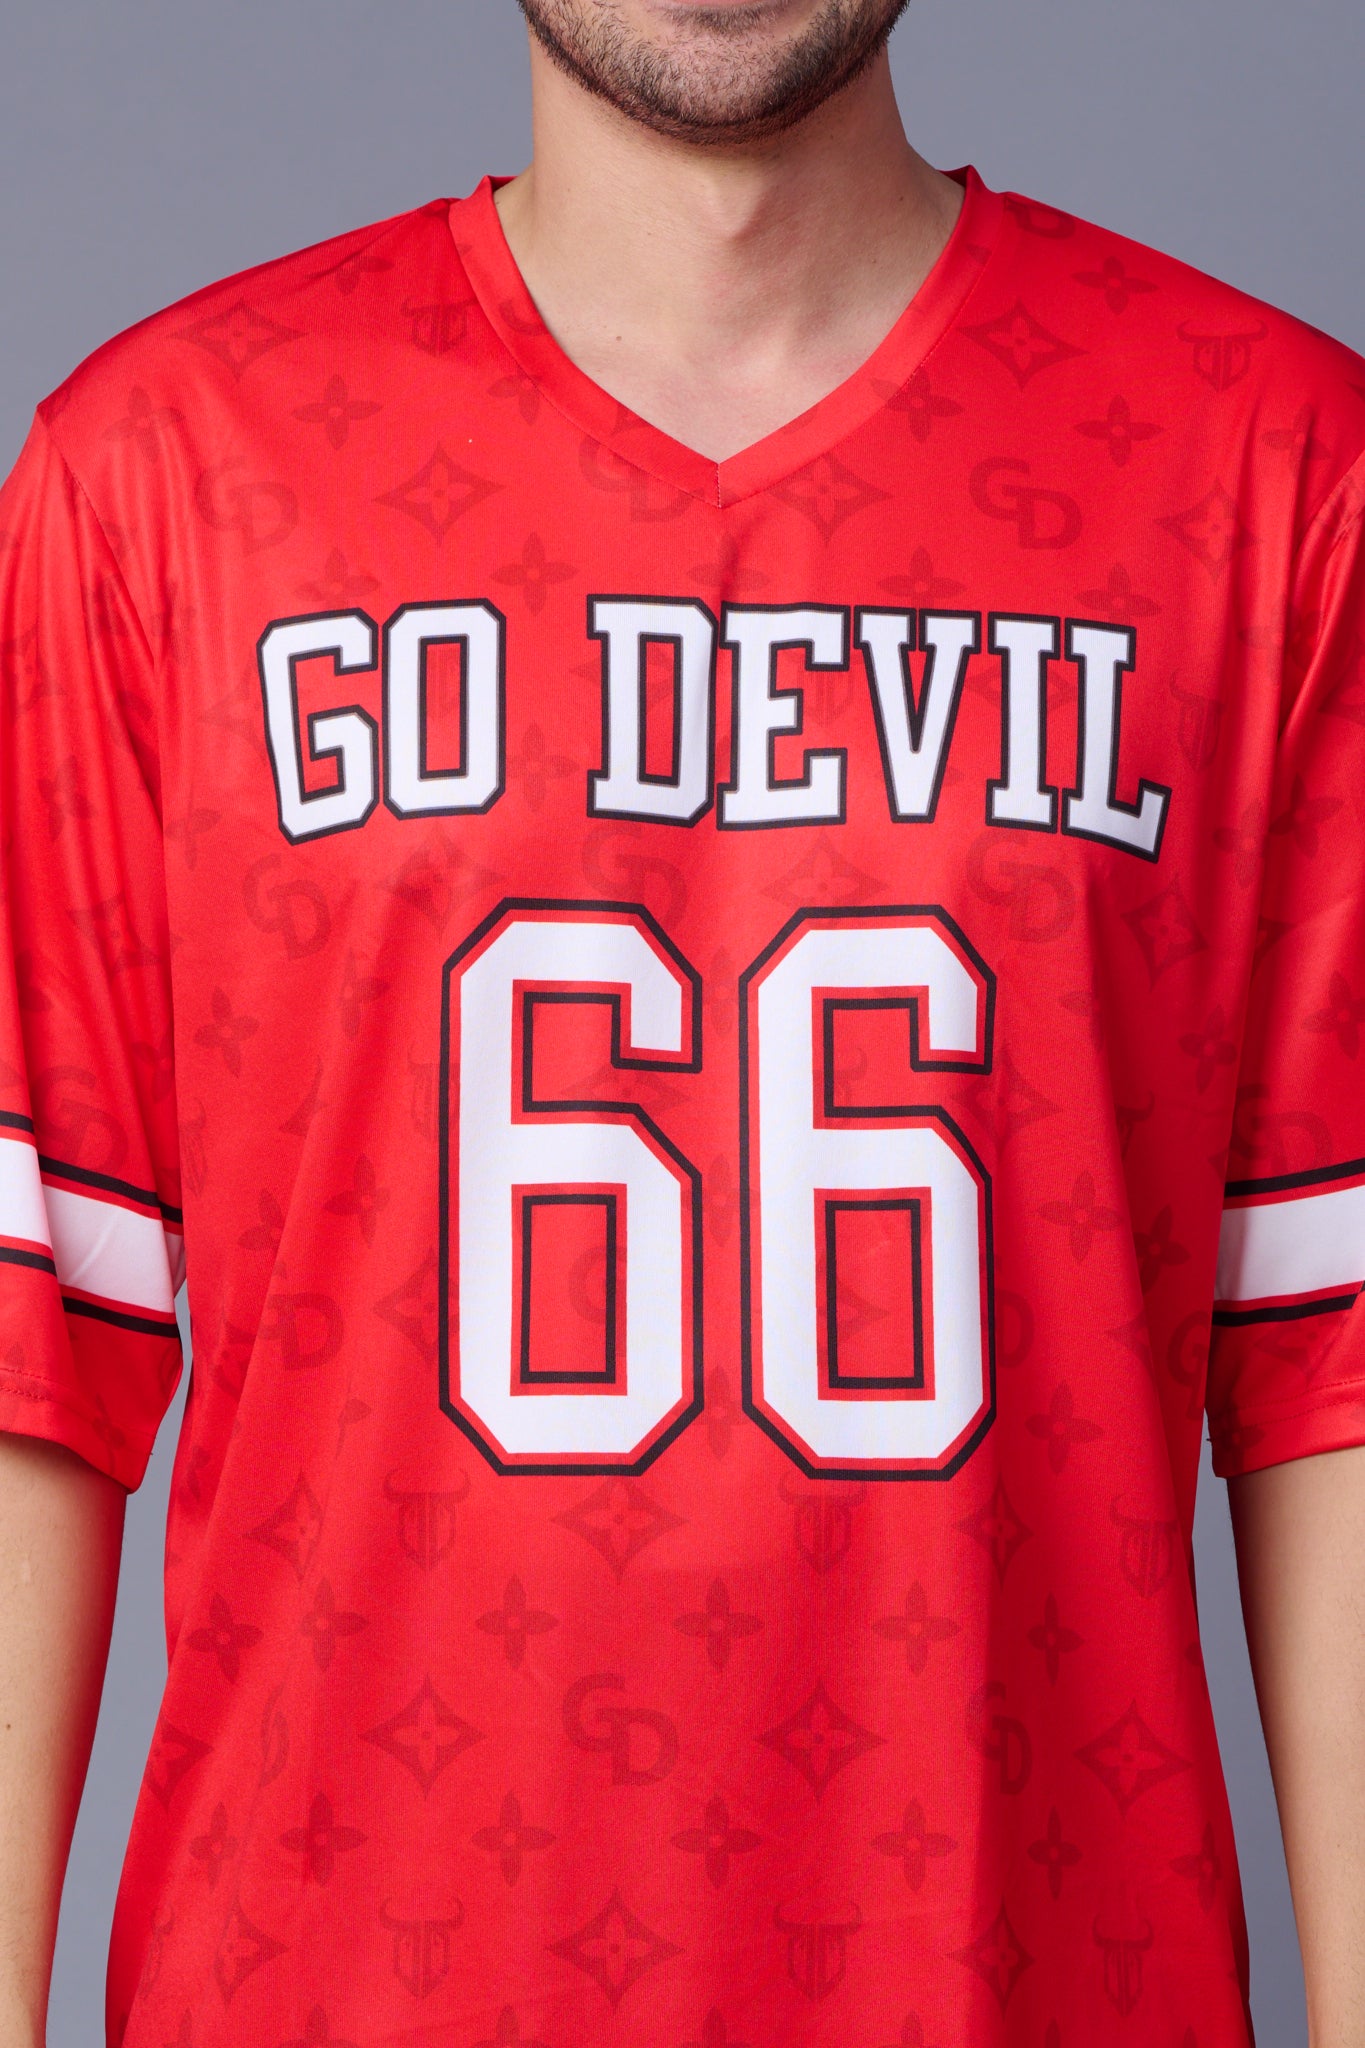 Go Devil 66 (In White) Printed Red Oversized T-Shirt for Men